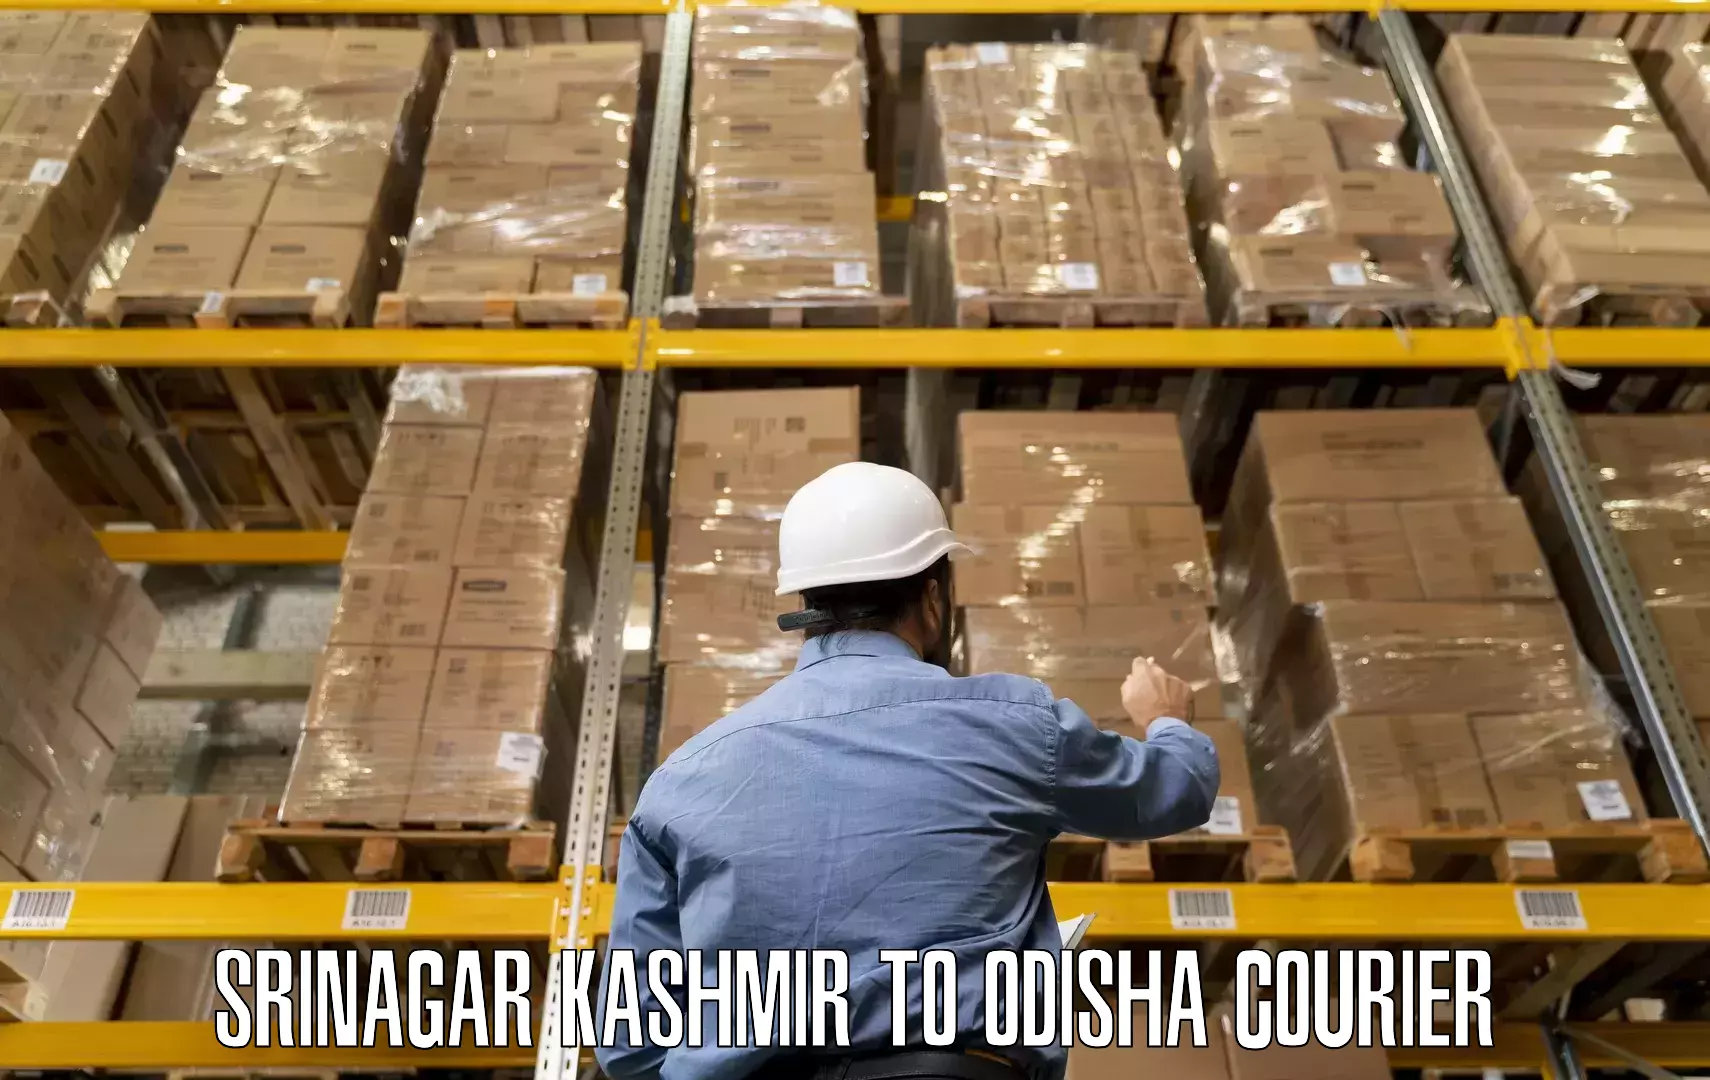 Furniture moving experts Srinagar Kashmir to Bheden